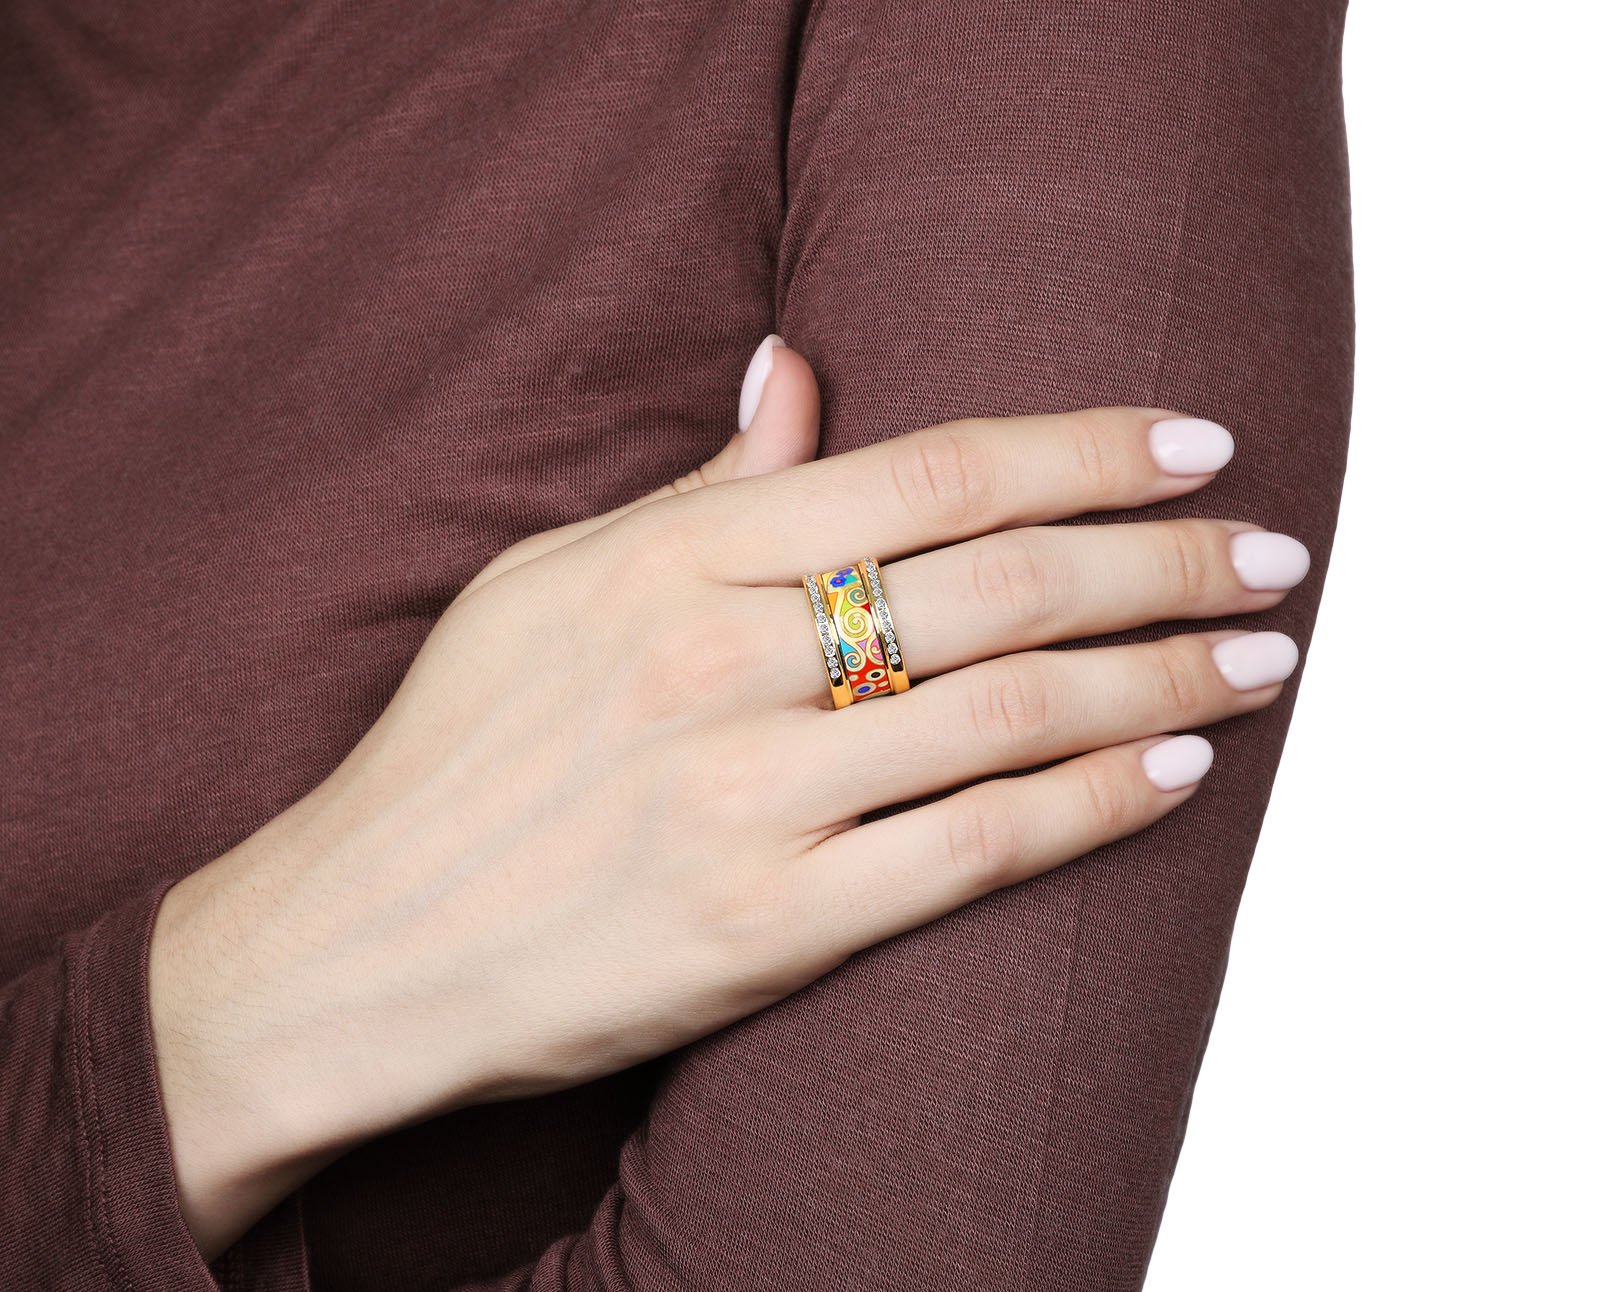 Оригинальное золотое кольцо с бриллиантами 0.65ct Frey Wille